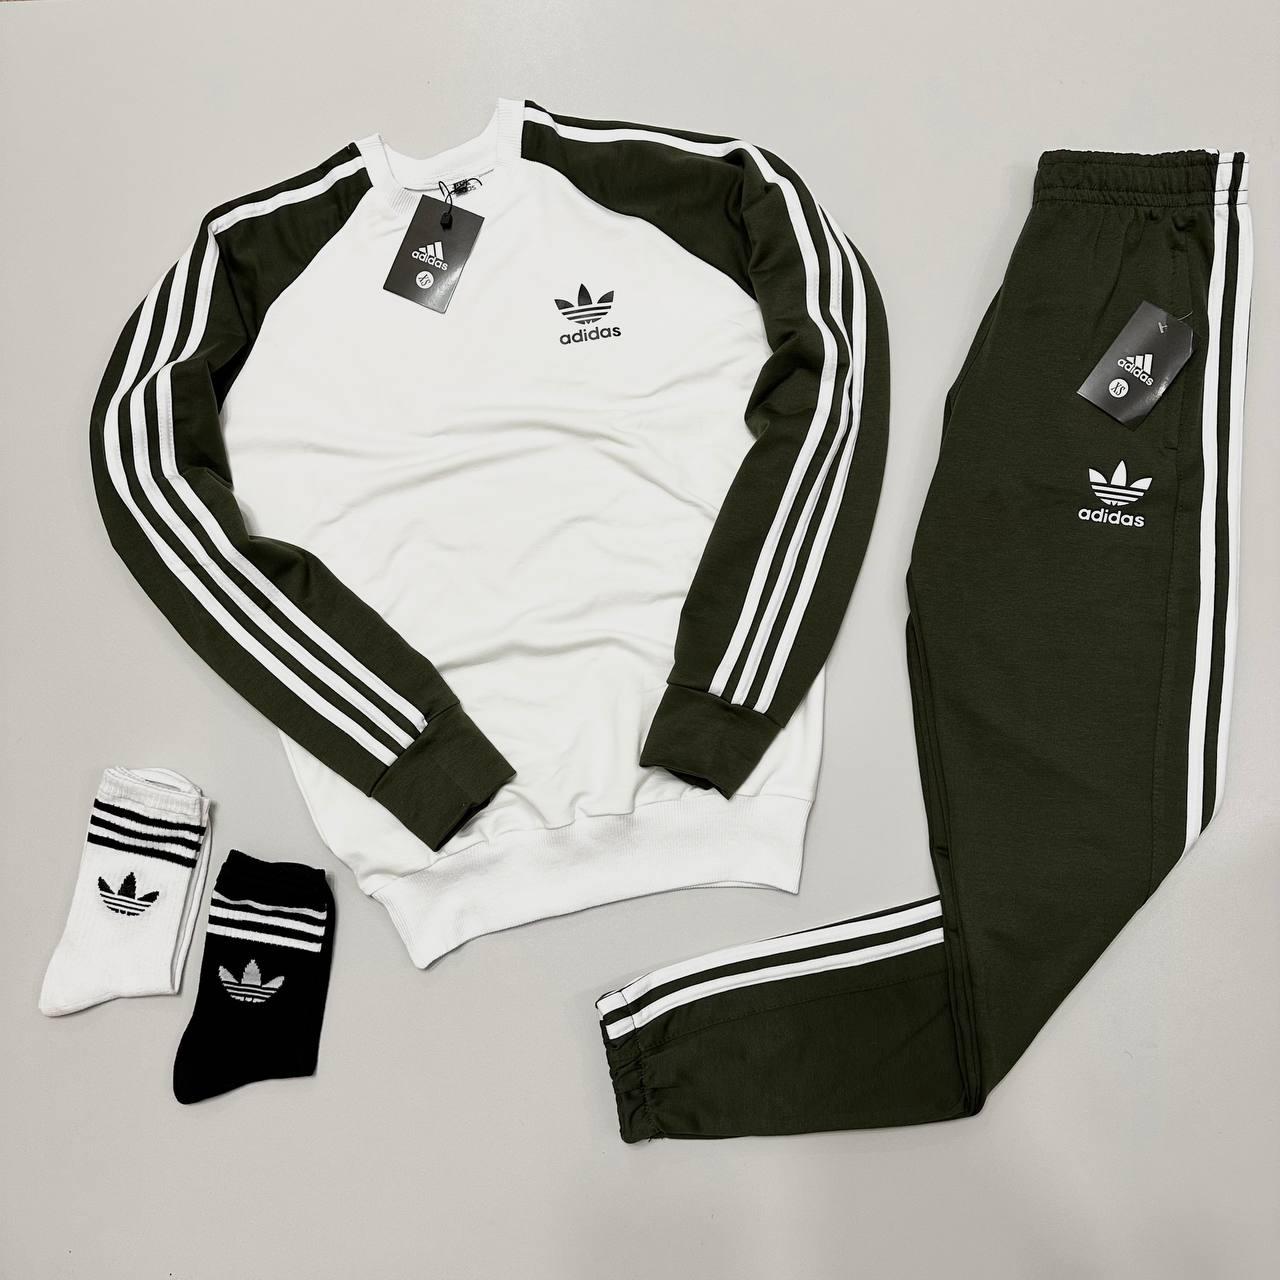 Чоловічий спортивний костюм Adidas білий із чорним без капюшона весняний  ⁇  Комплект Адідас світшот та штани (N)